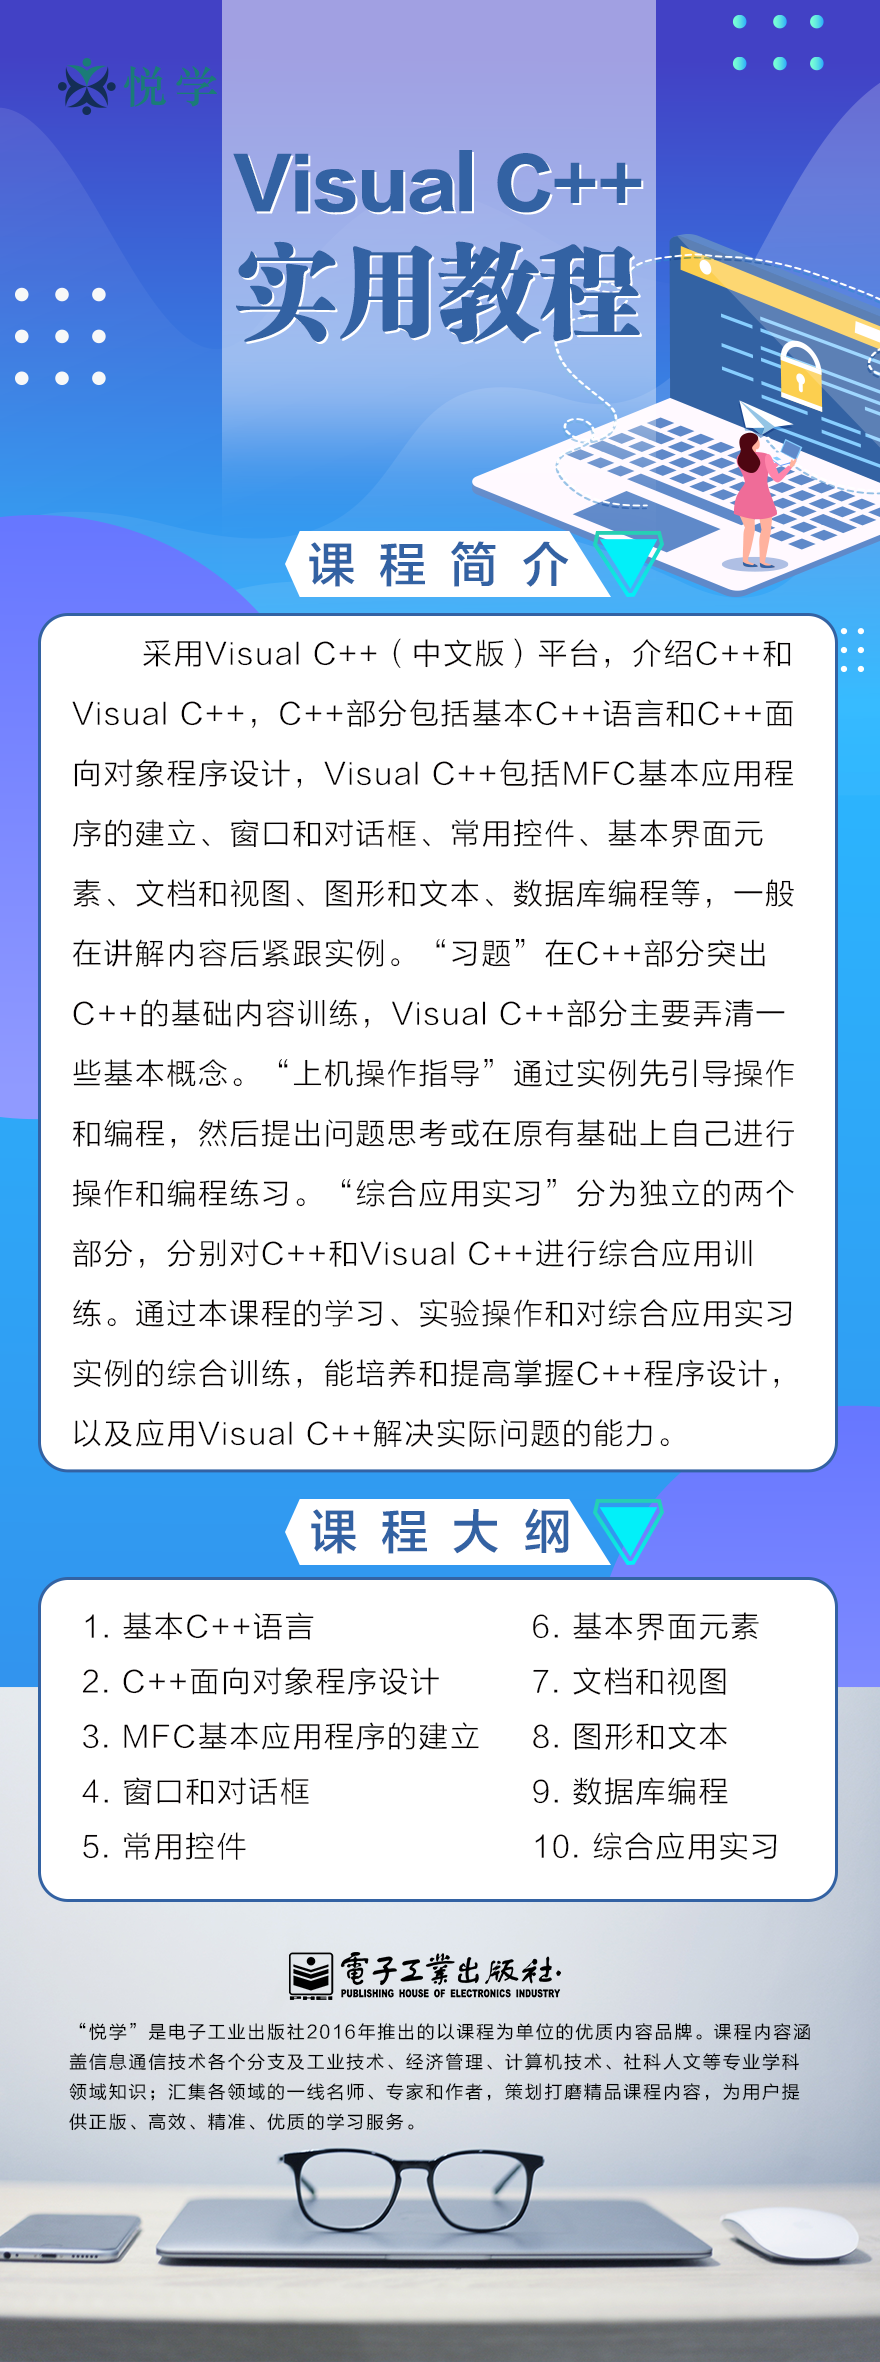 Visual C++实用教程.png